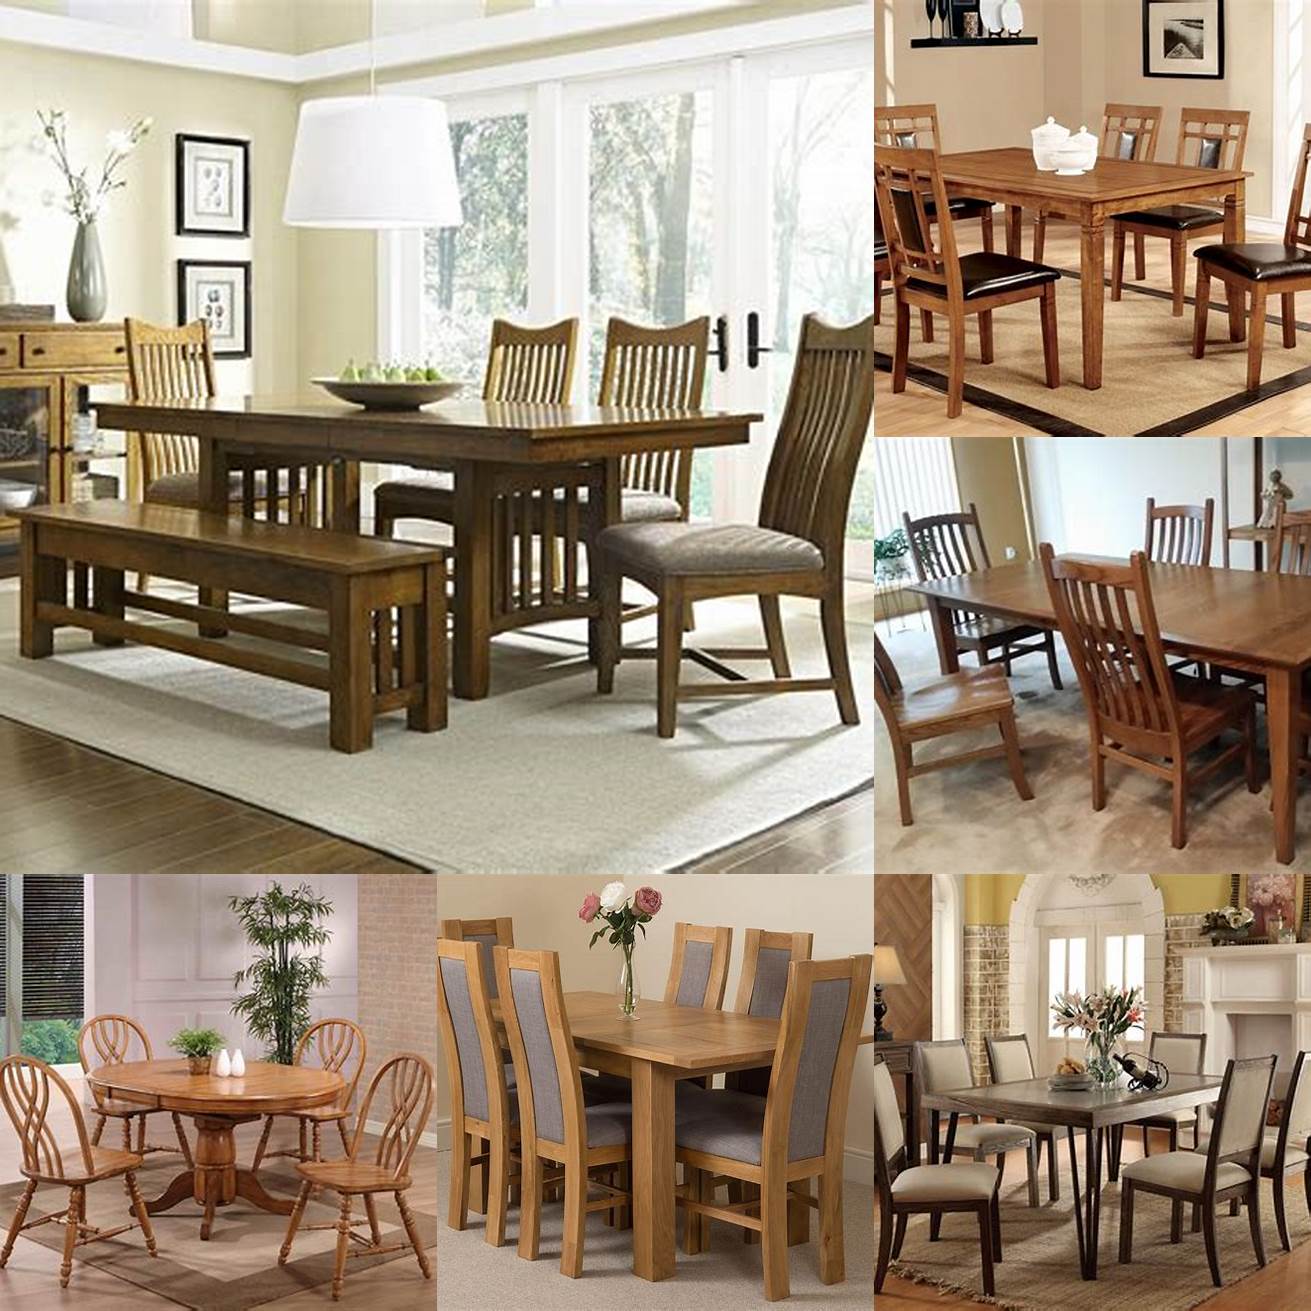 Oak Dining Room Furniture